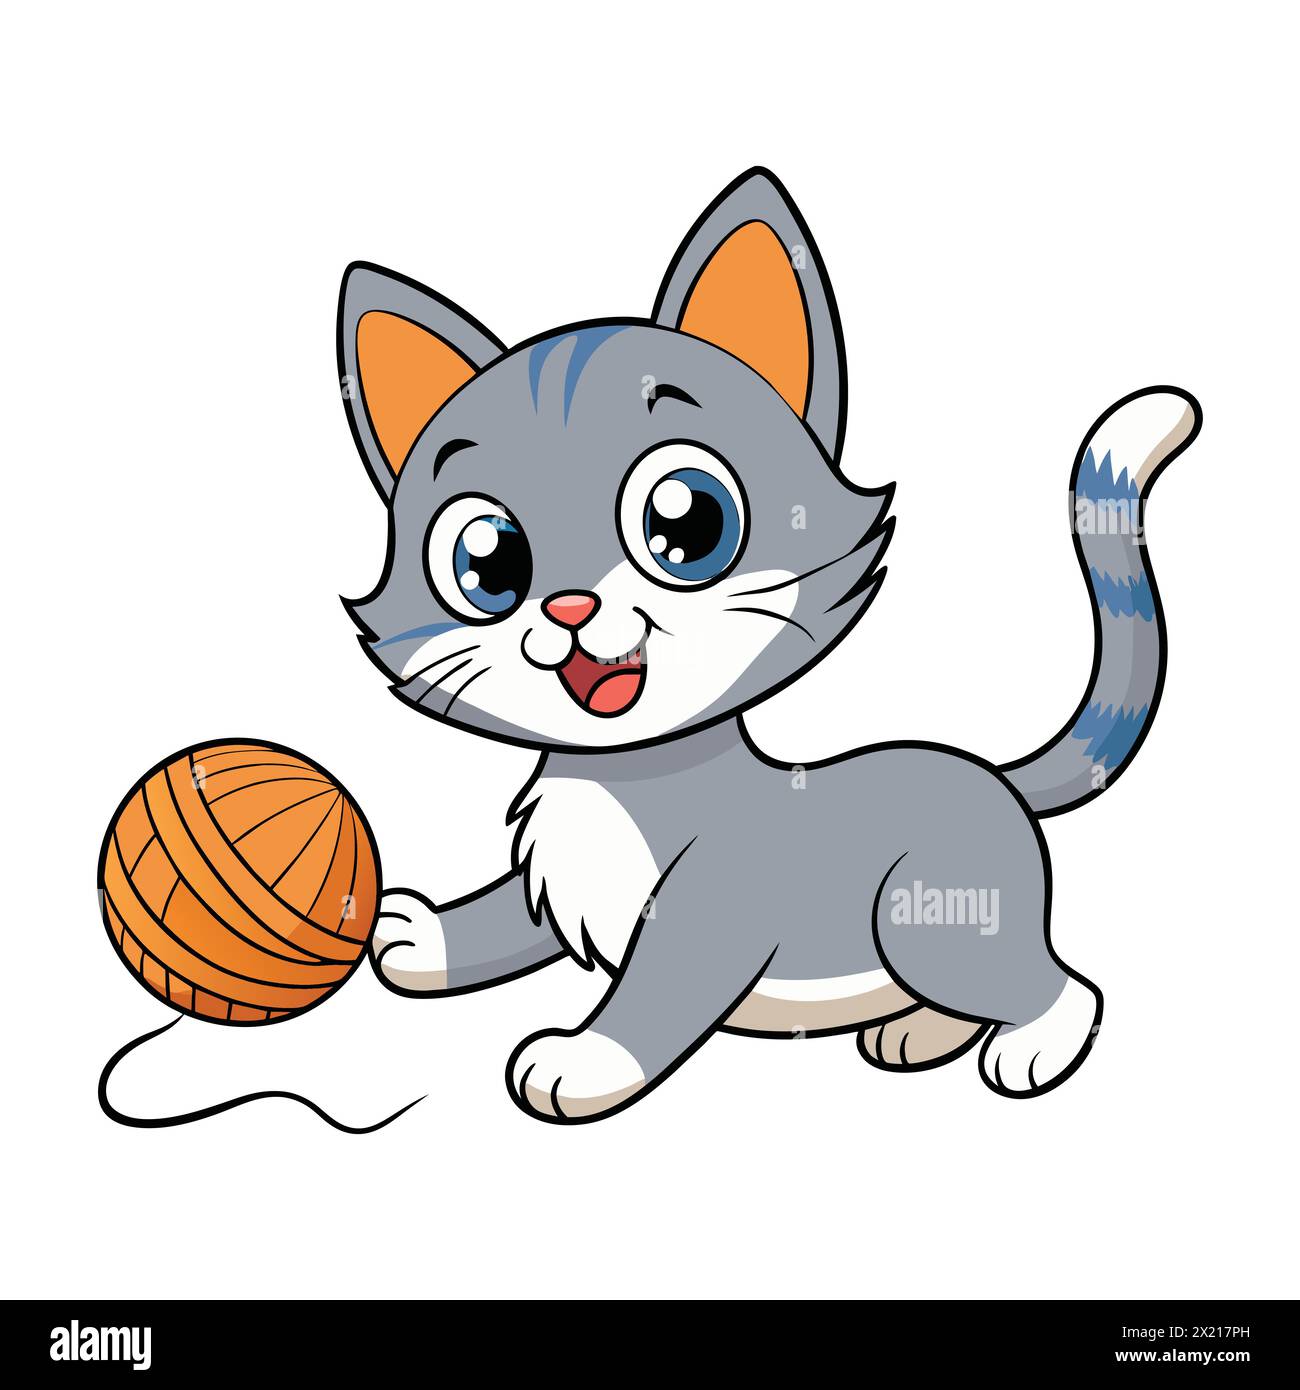 Adorable gatito de dibujos animados jugando con hilo. Personaje juguetón de gatito con hilo. Gato encantador jugando con bola de hilo - Vector de dibujos animados Illustrationa Ilustración del Vector